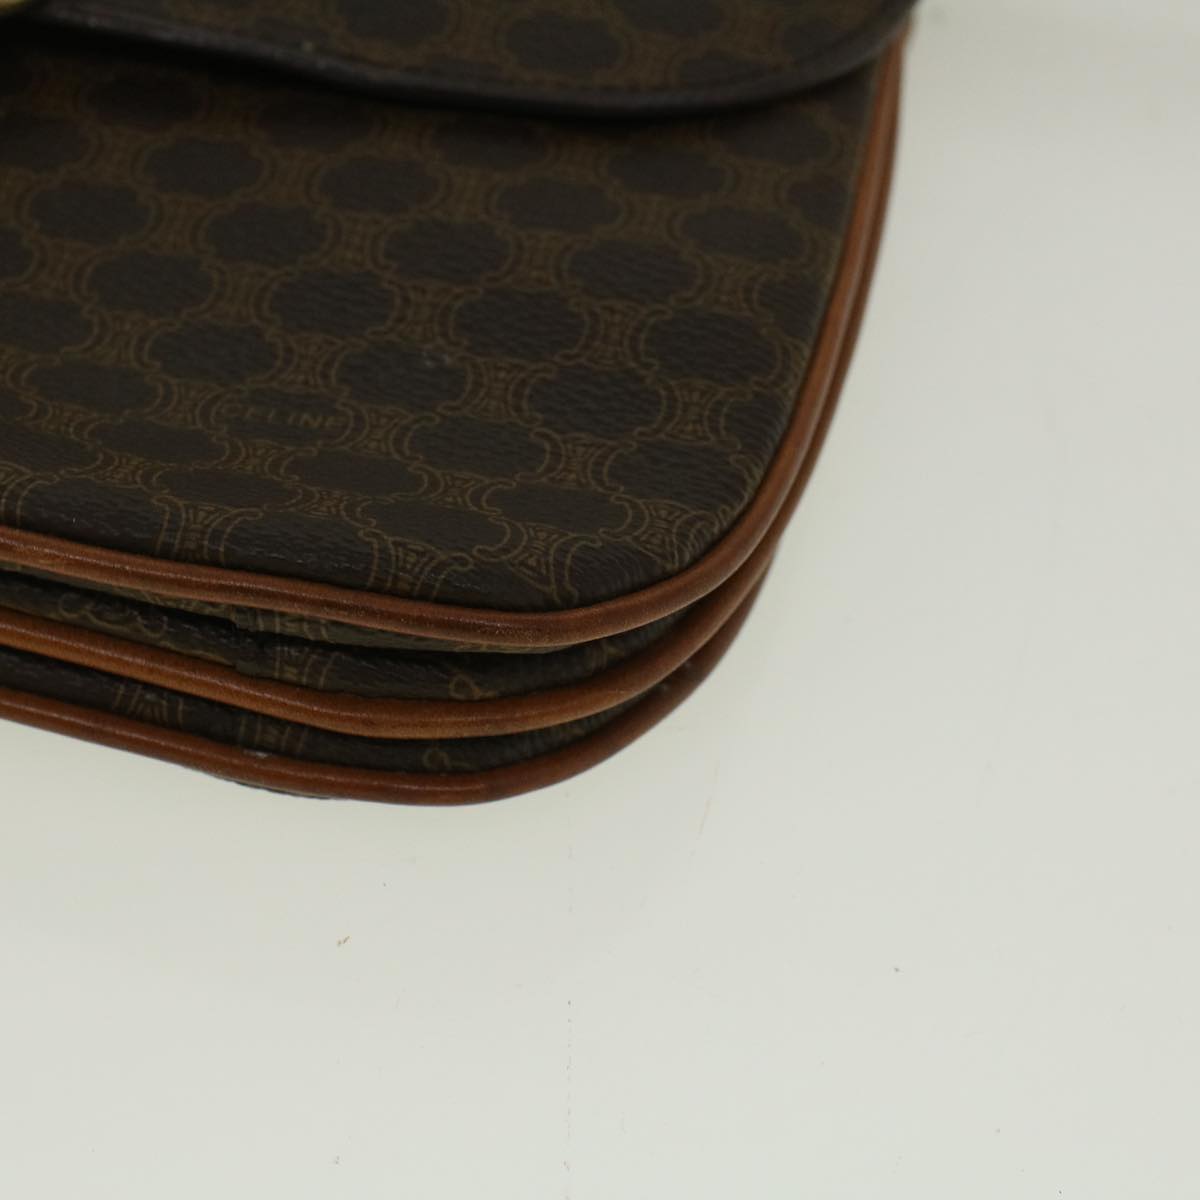 CELINE Macadam Canvas Shoulder Bag PVC Leather Brown Auth 58671